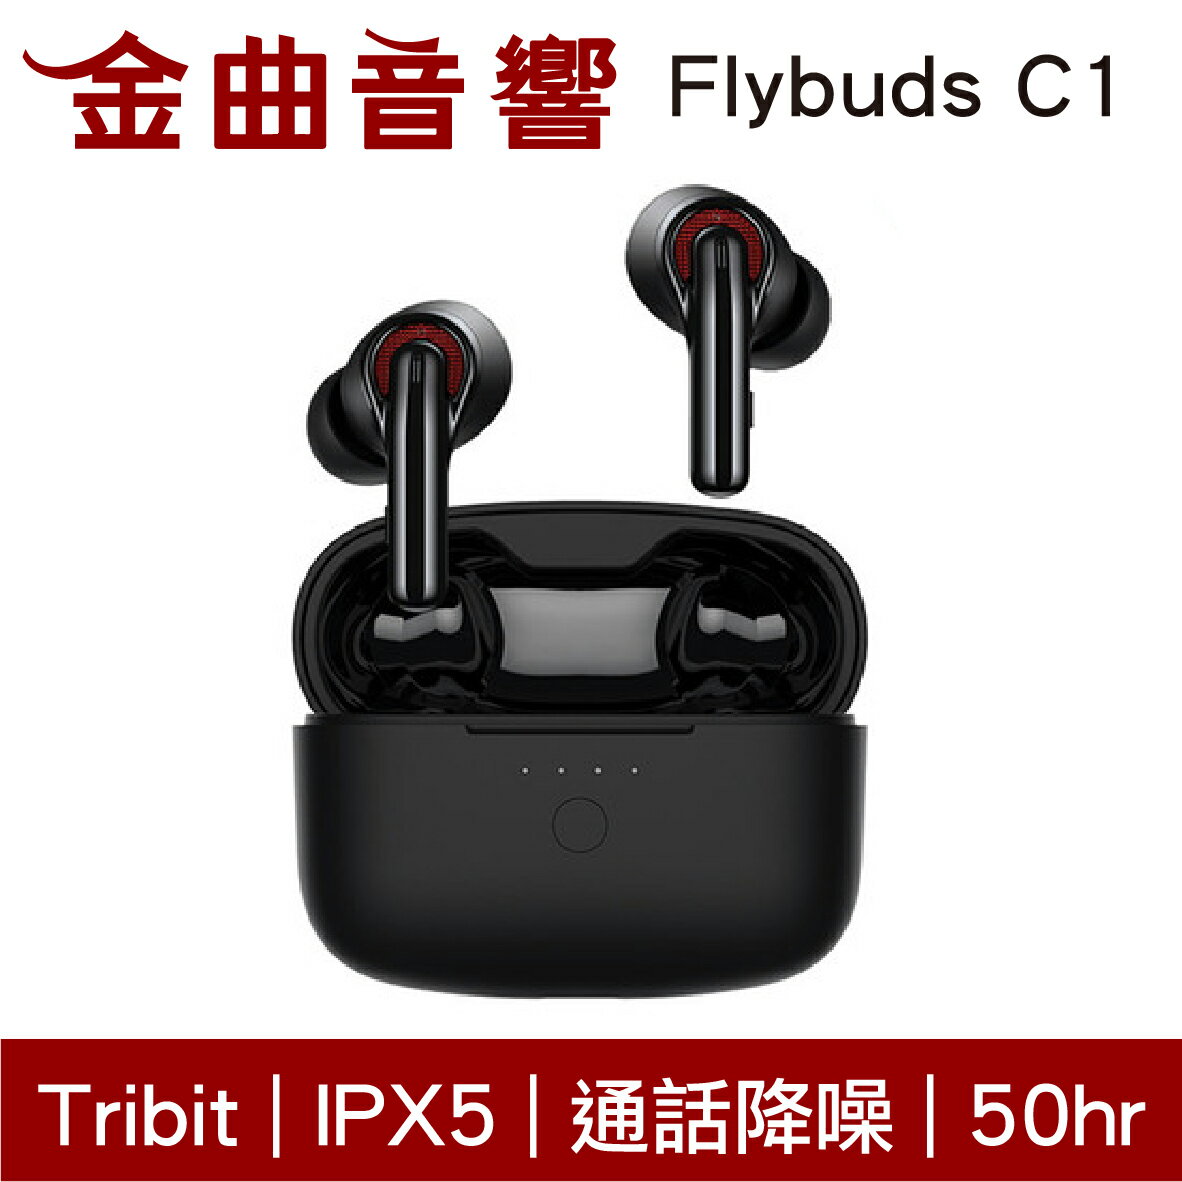 Tribit Flybuds C1 黑色 通話降噪 IPX5 低延遲 HiFi 真無線 藍芽 耳機 | 金曲音響